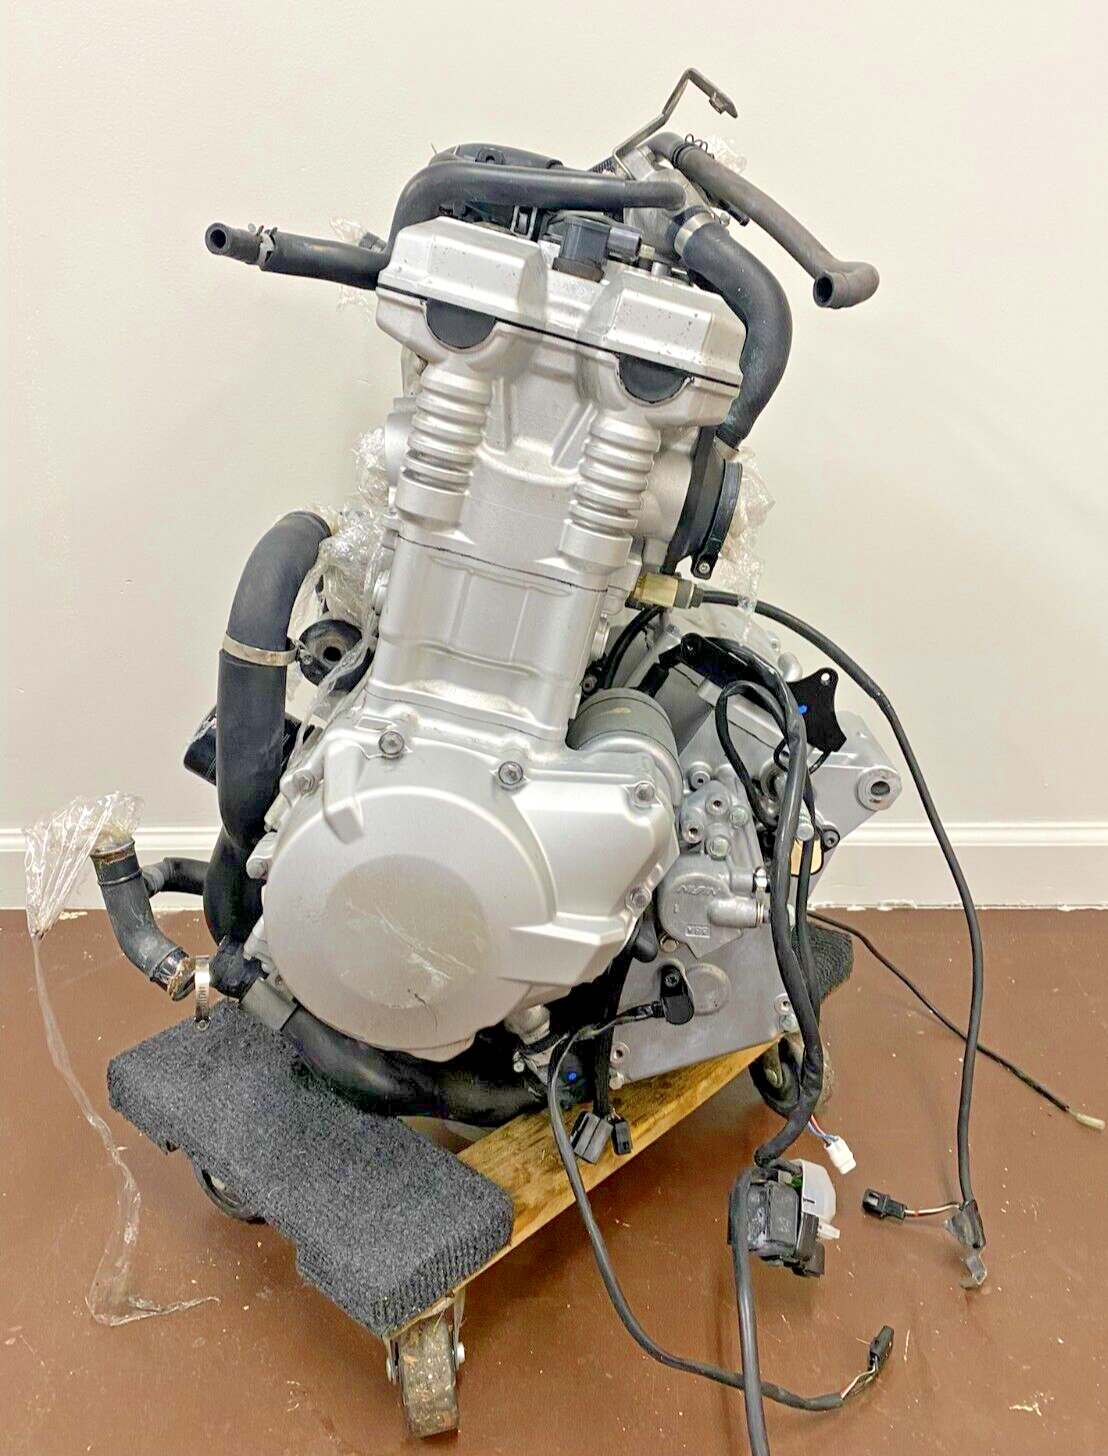 2007 SUZUKI BANDIT 1250 1250S Engine Motor Transmission Gearbox Charging System